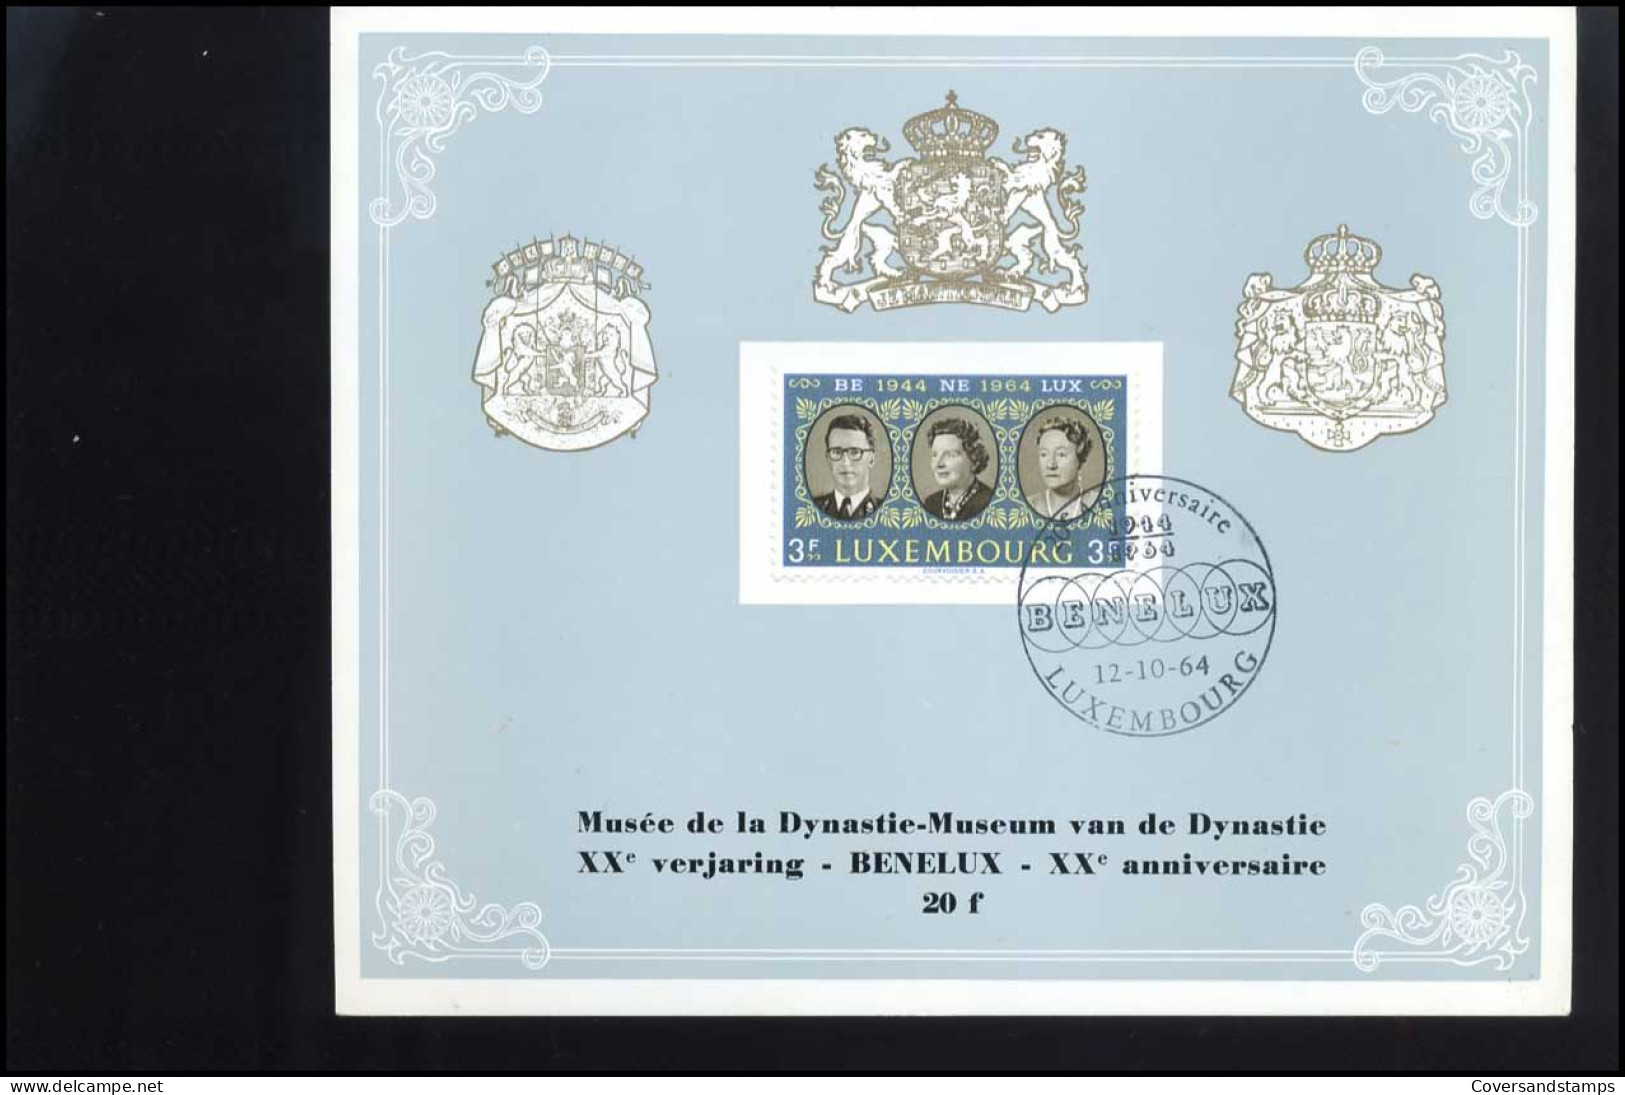 Luxemburg  - Souvenir   20 Jaar Benelux                                     - Briefe U. Dokumente